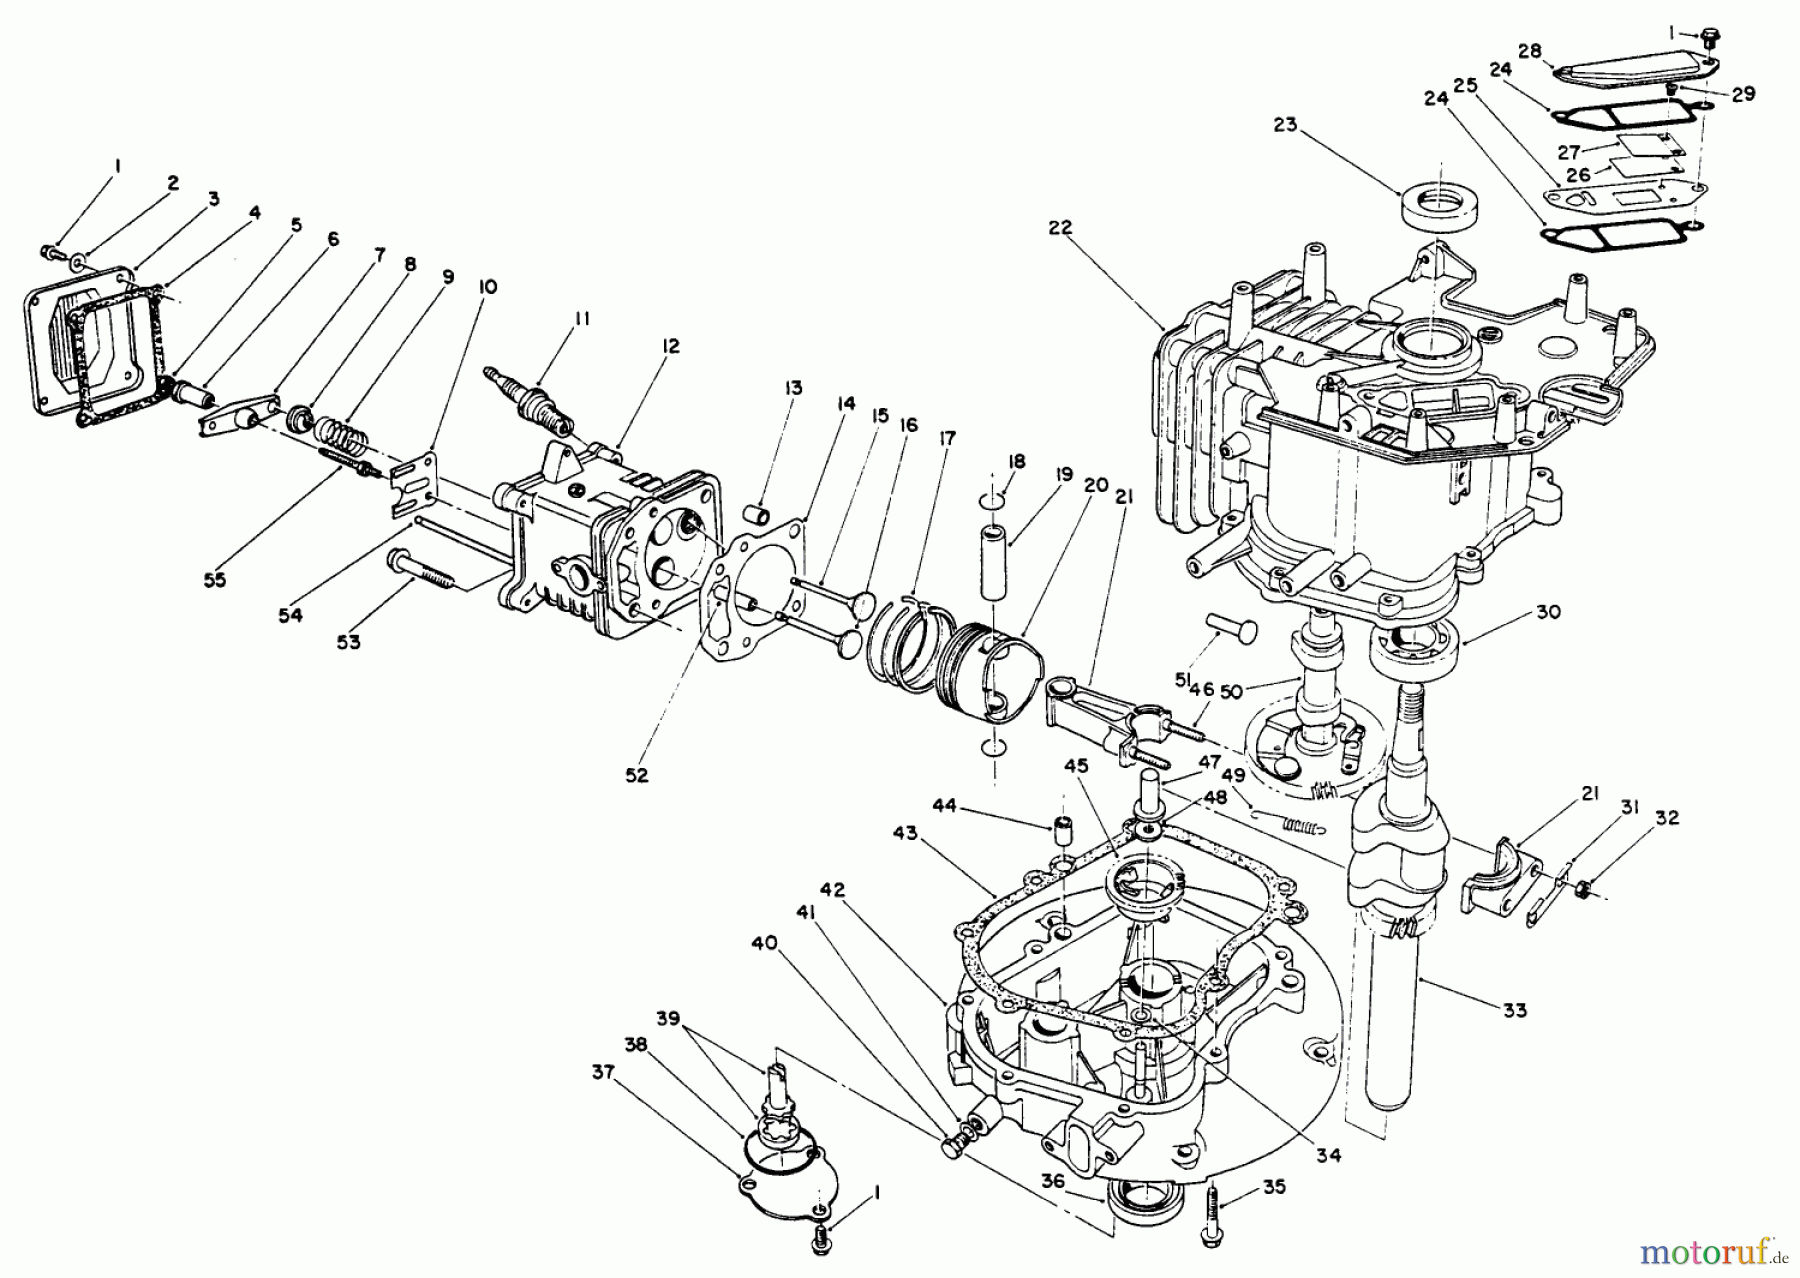  Toro Neu Mowers, Walk-Behind Seite 2 26625BG - Toro Lawnmower, 1991 (1000001-1999999) CRANKCASE ASSEMBLY (ENGINE NO. VML0-5)